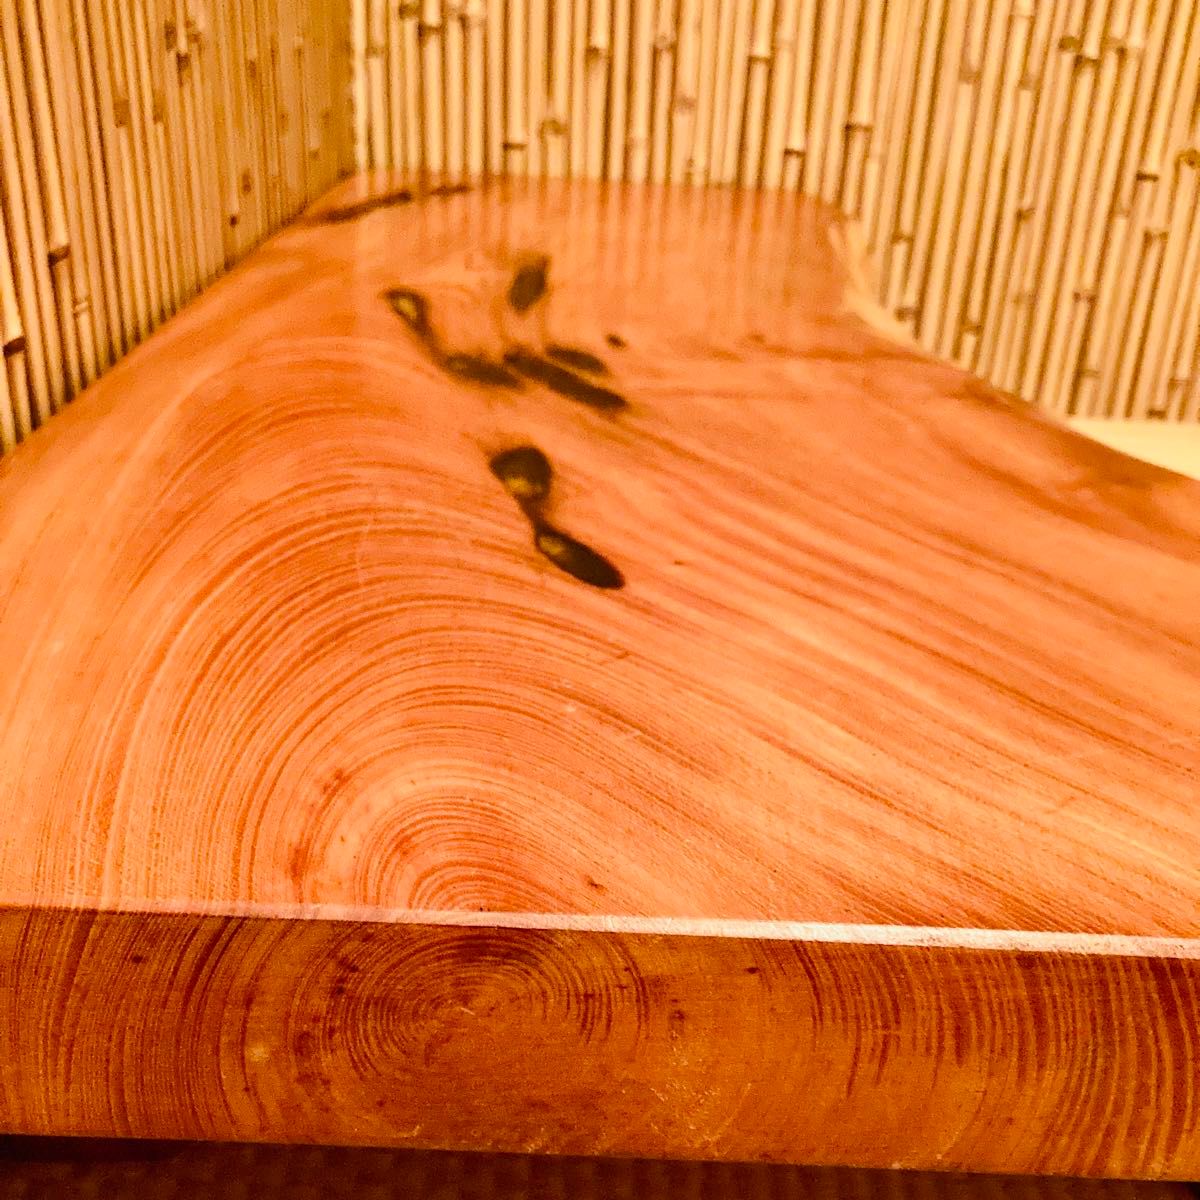 ☆美しい木目☆ 高級天然木材 一枚板ローテーブル座卓 扇形 和風インテリア 和室 座敷机 ちゃぶ台